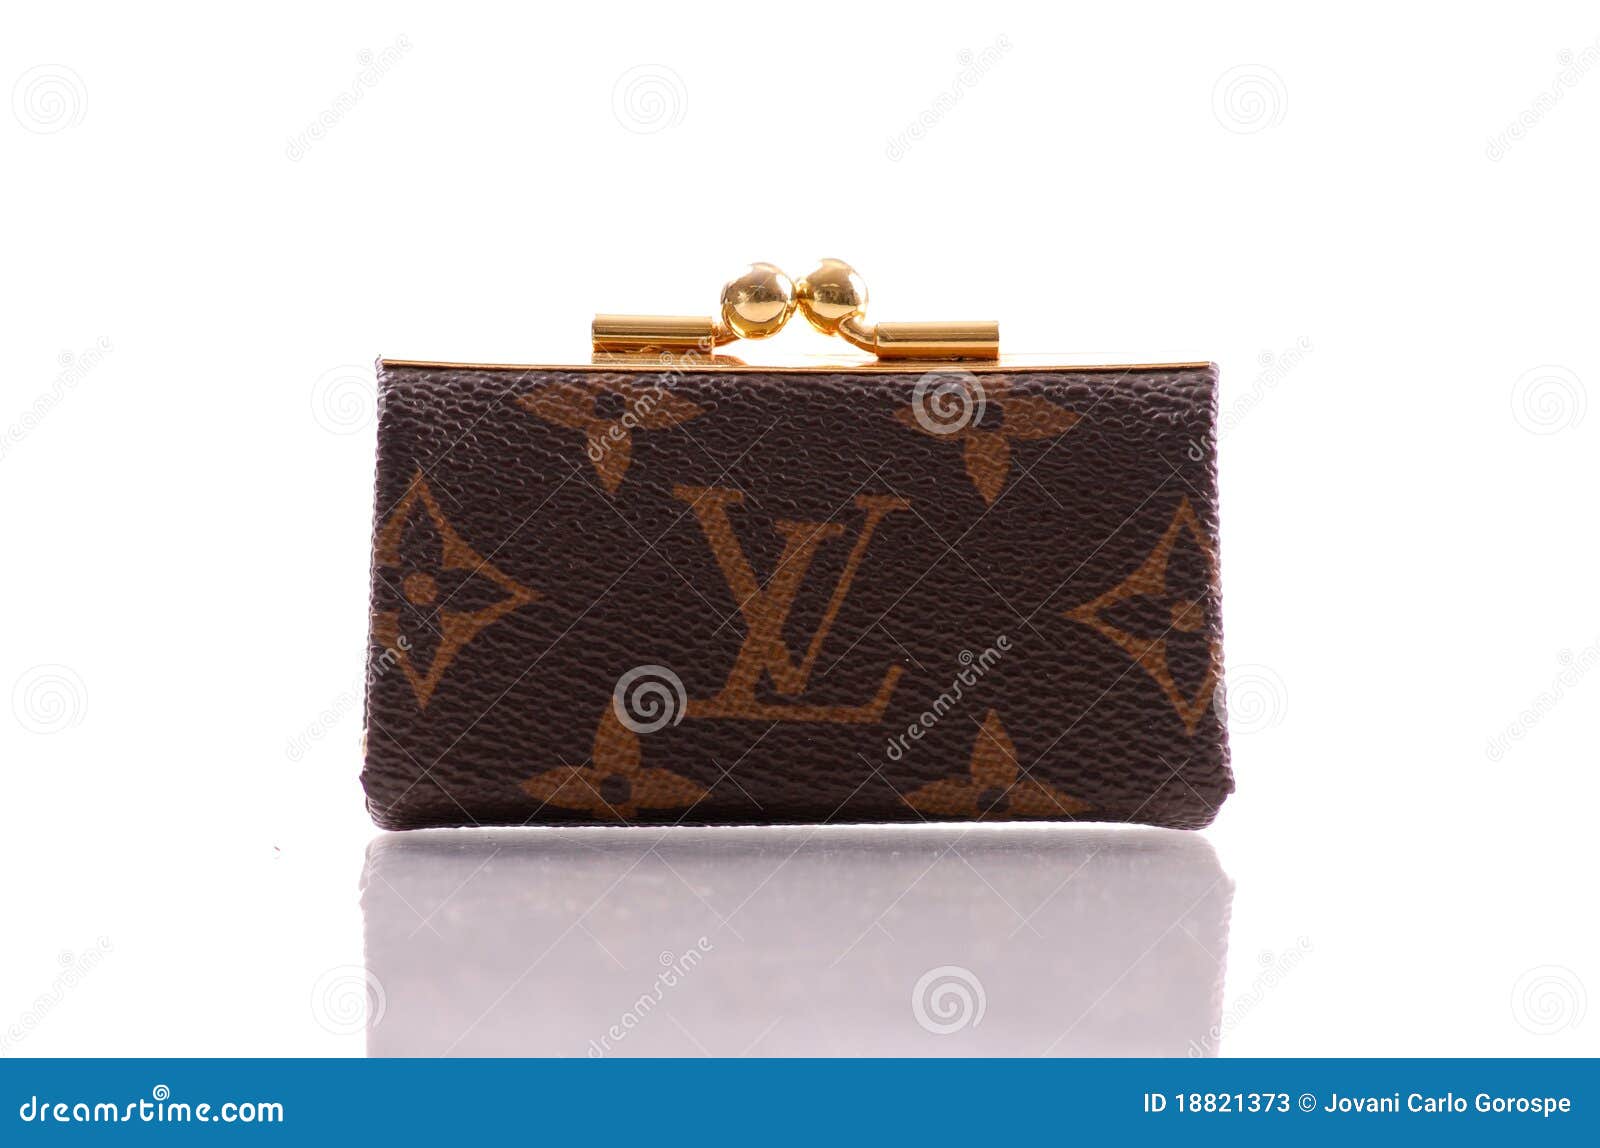 Louis Vuitton Coin Purse Editorial Stock Photo - Image: 18821373